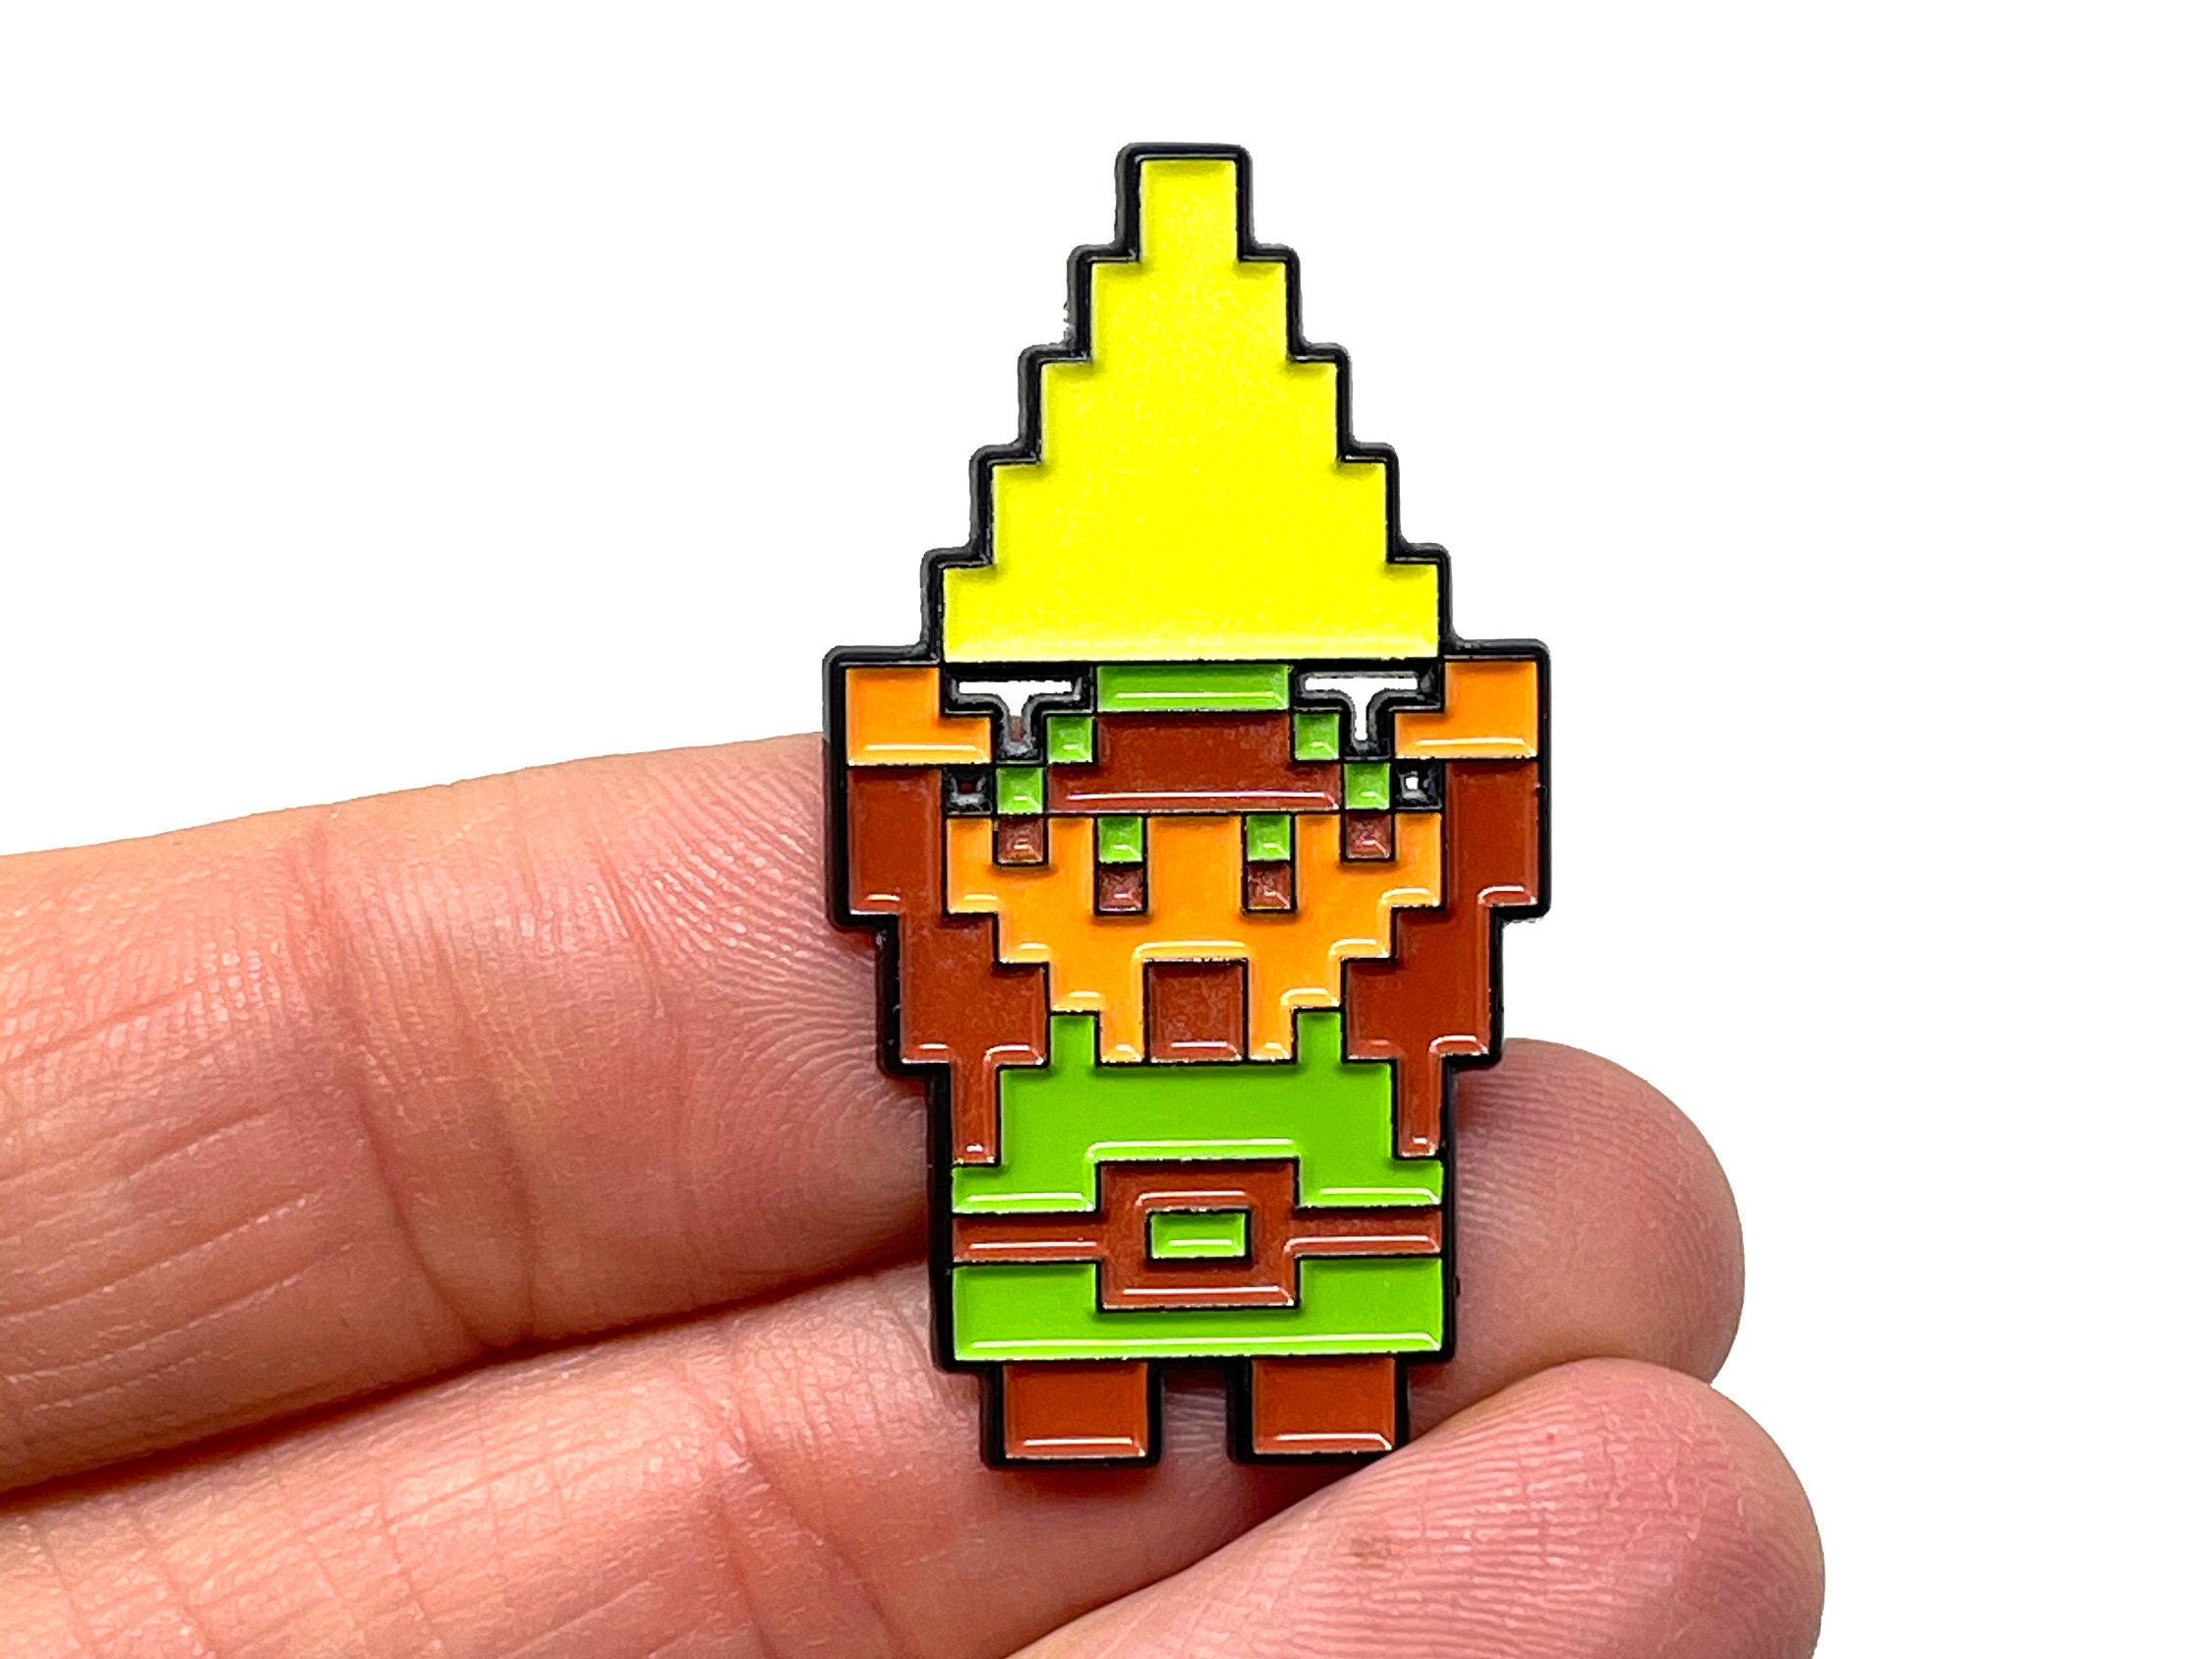 8-Bit The Legend of Zelda Link Magnet big round 3 inch diameter